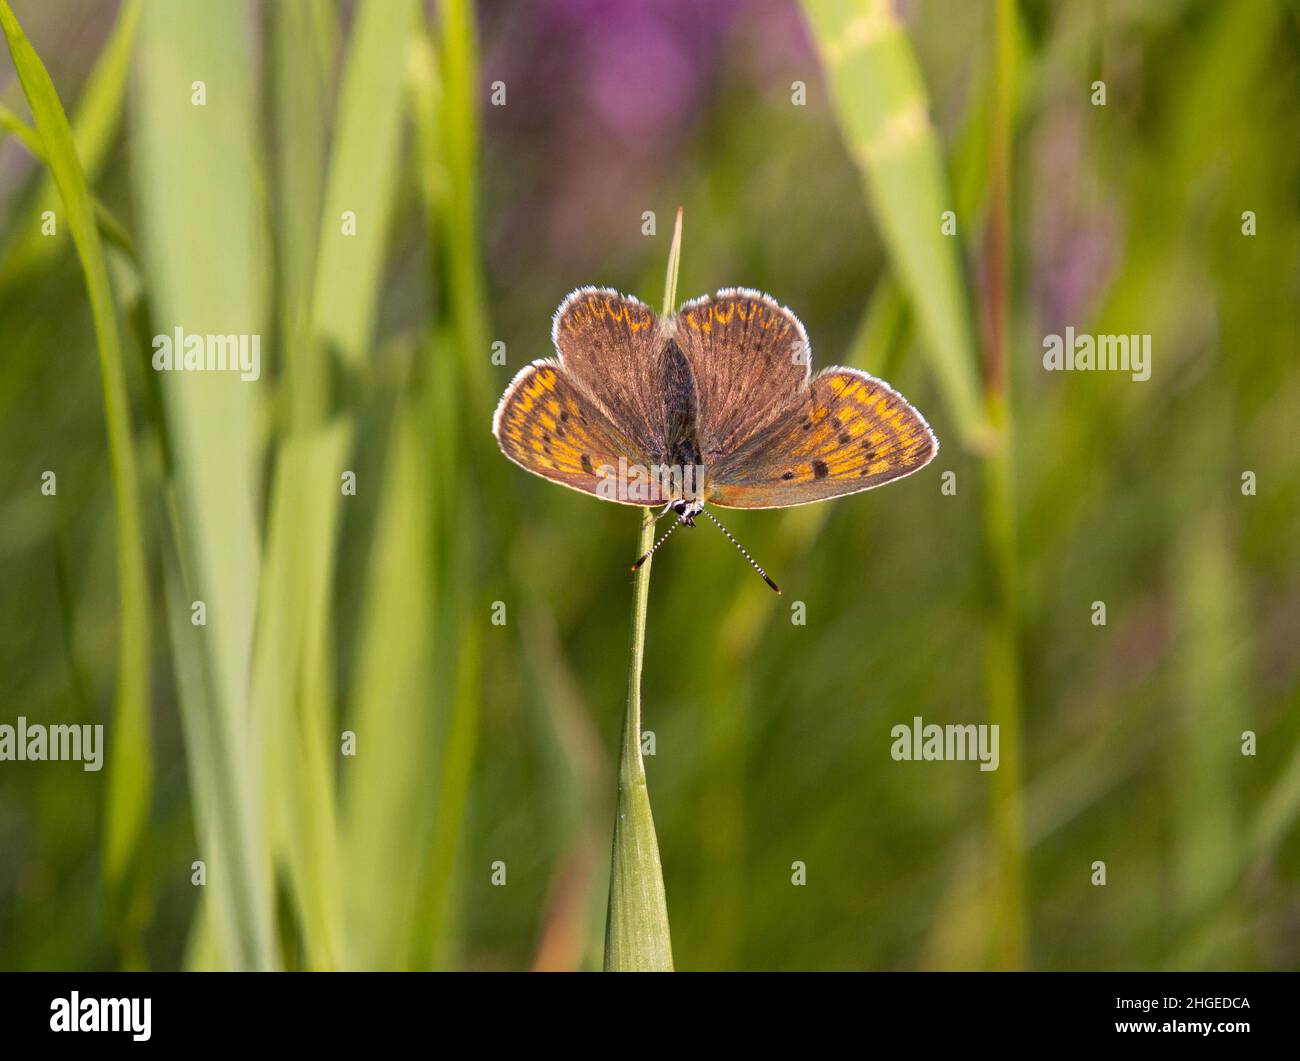 Macro de una mariposa hembra de cobre sooty (lycaena tityrus) sentada en el césped con fondo bokeh borroso; protección ambiental libre de pesticidas Foto de stock